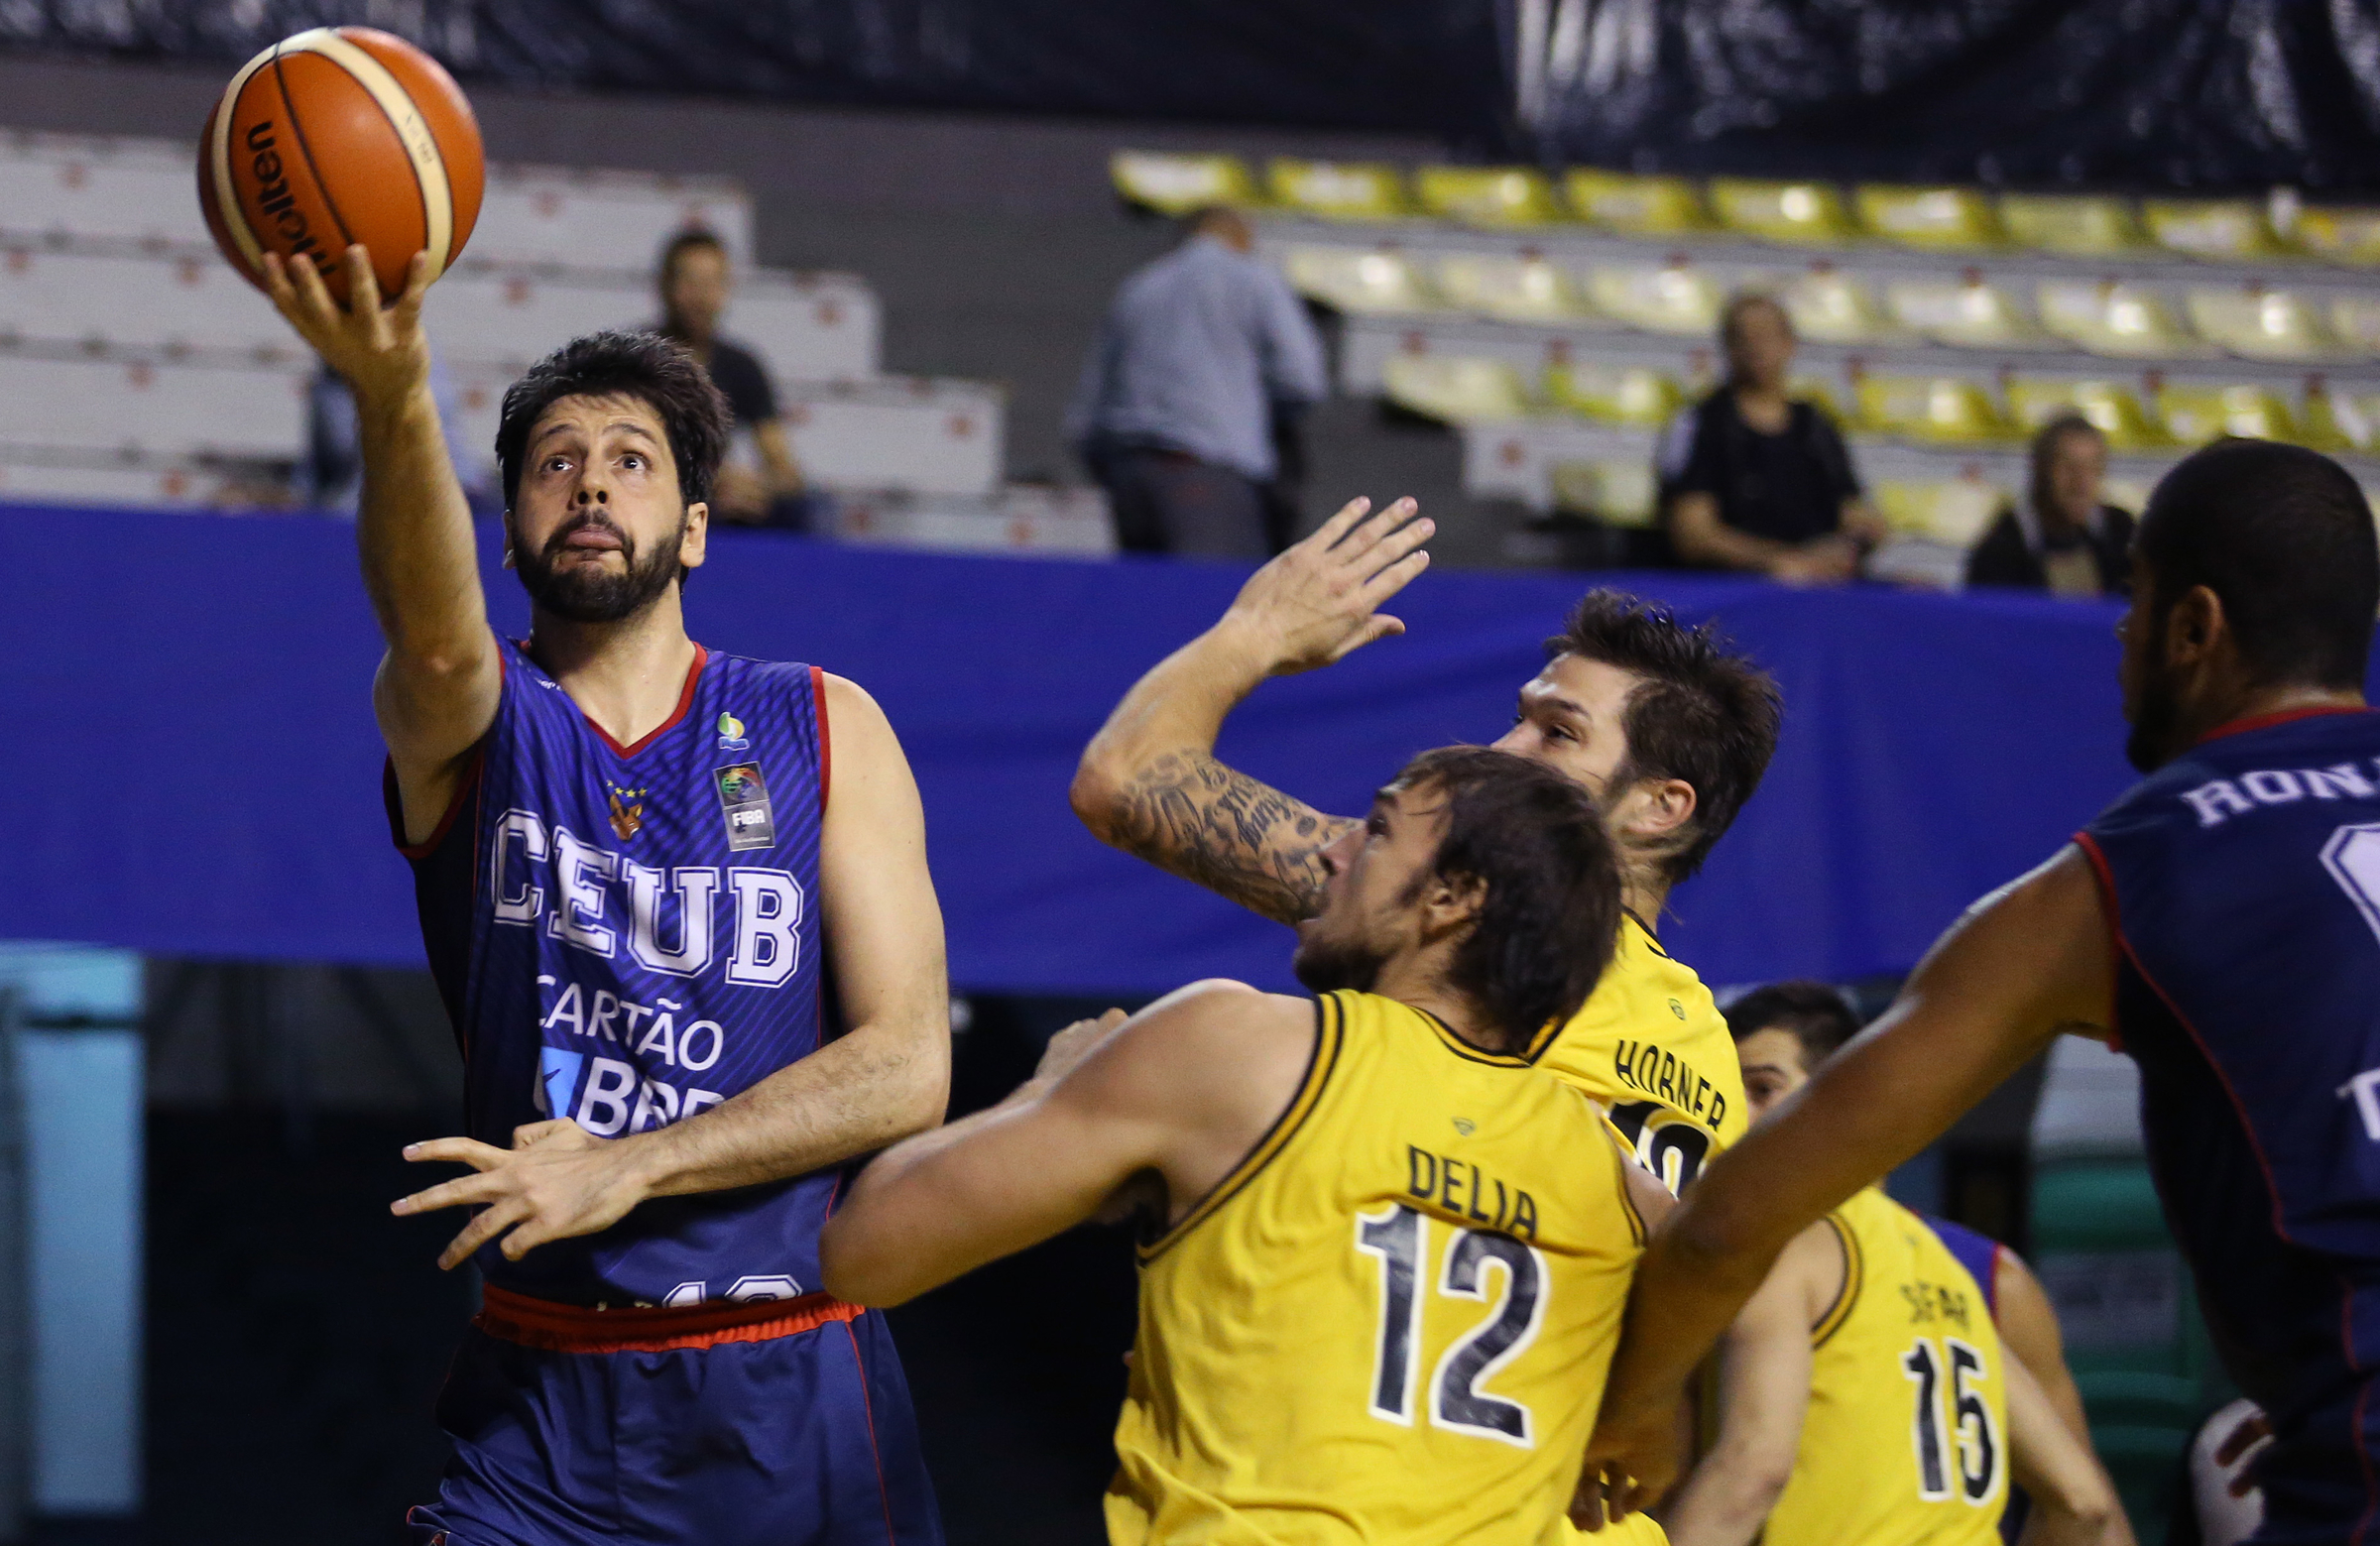 Com mais uma boa atuação de Giovannoni, o Brasília estreou com vitória na 2ª fase da Liga Sul-Americana (José Jiménez Tirado/FIBA Americas)